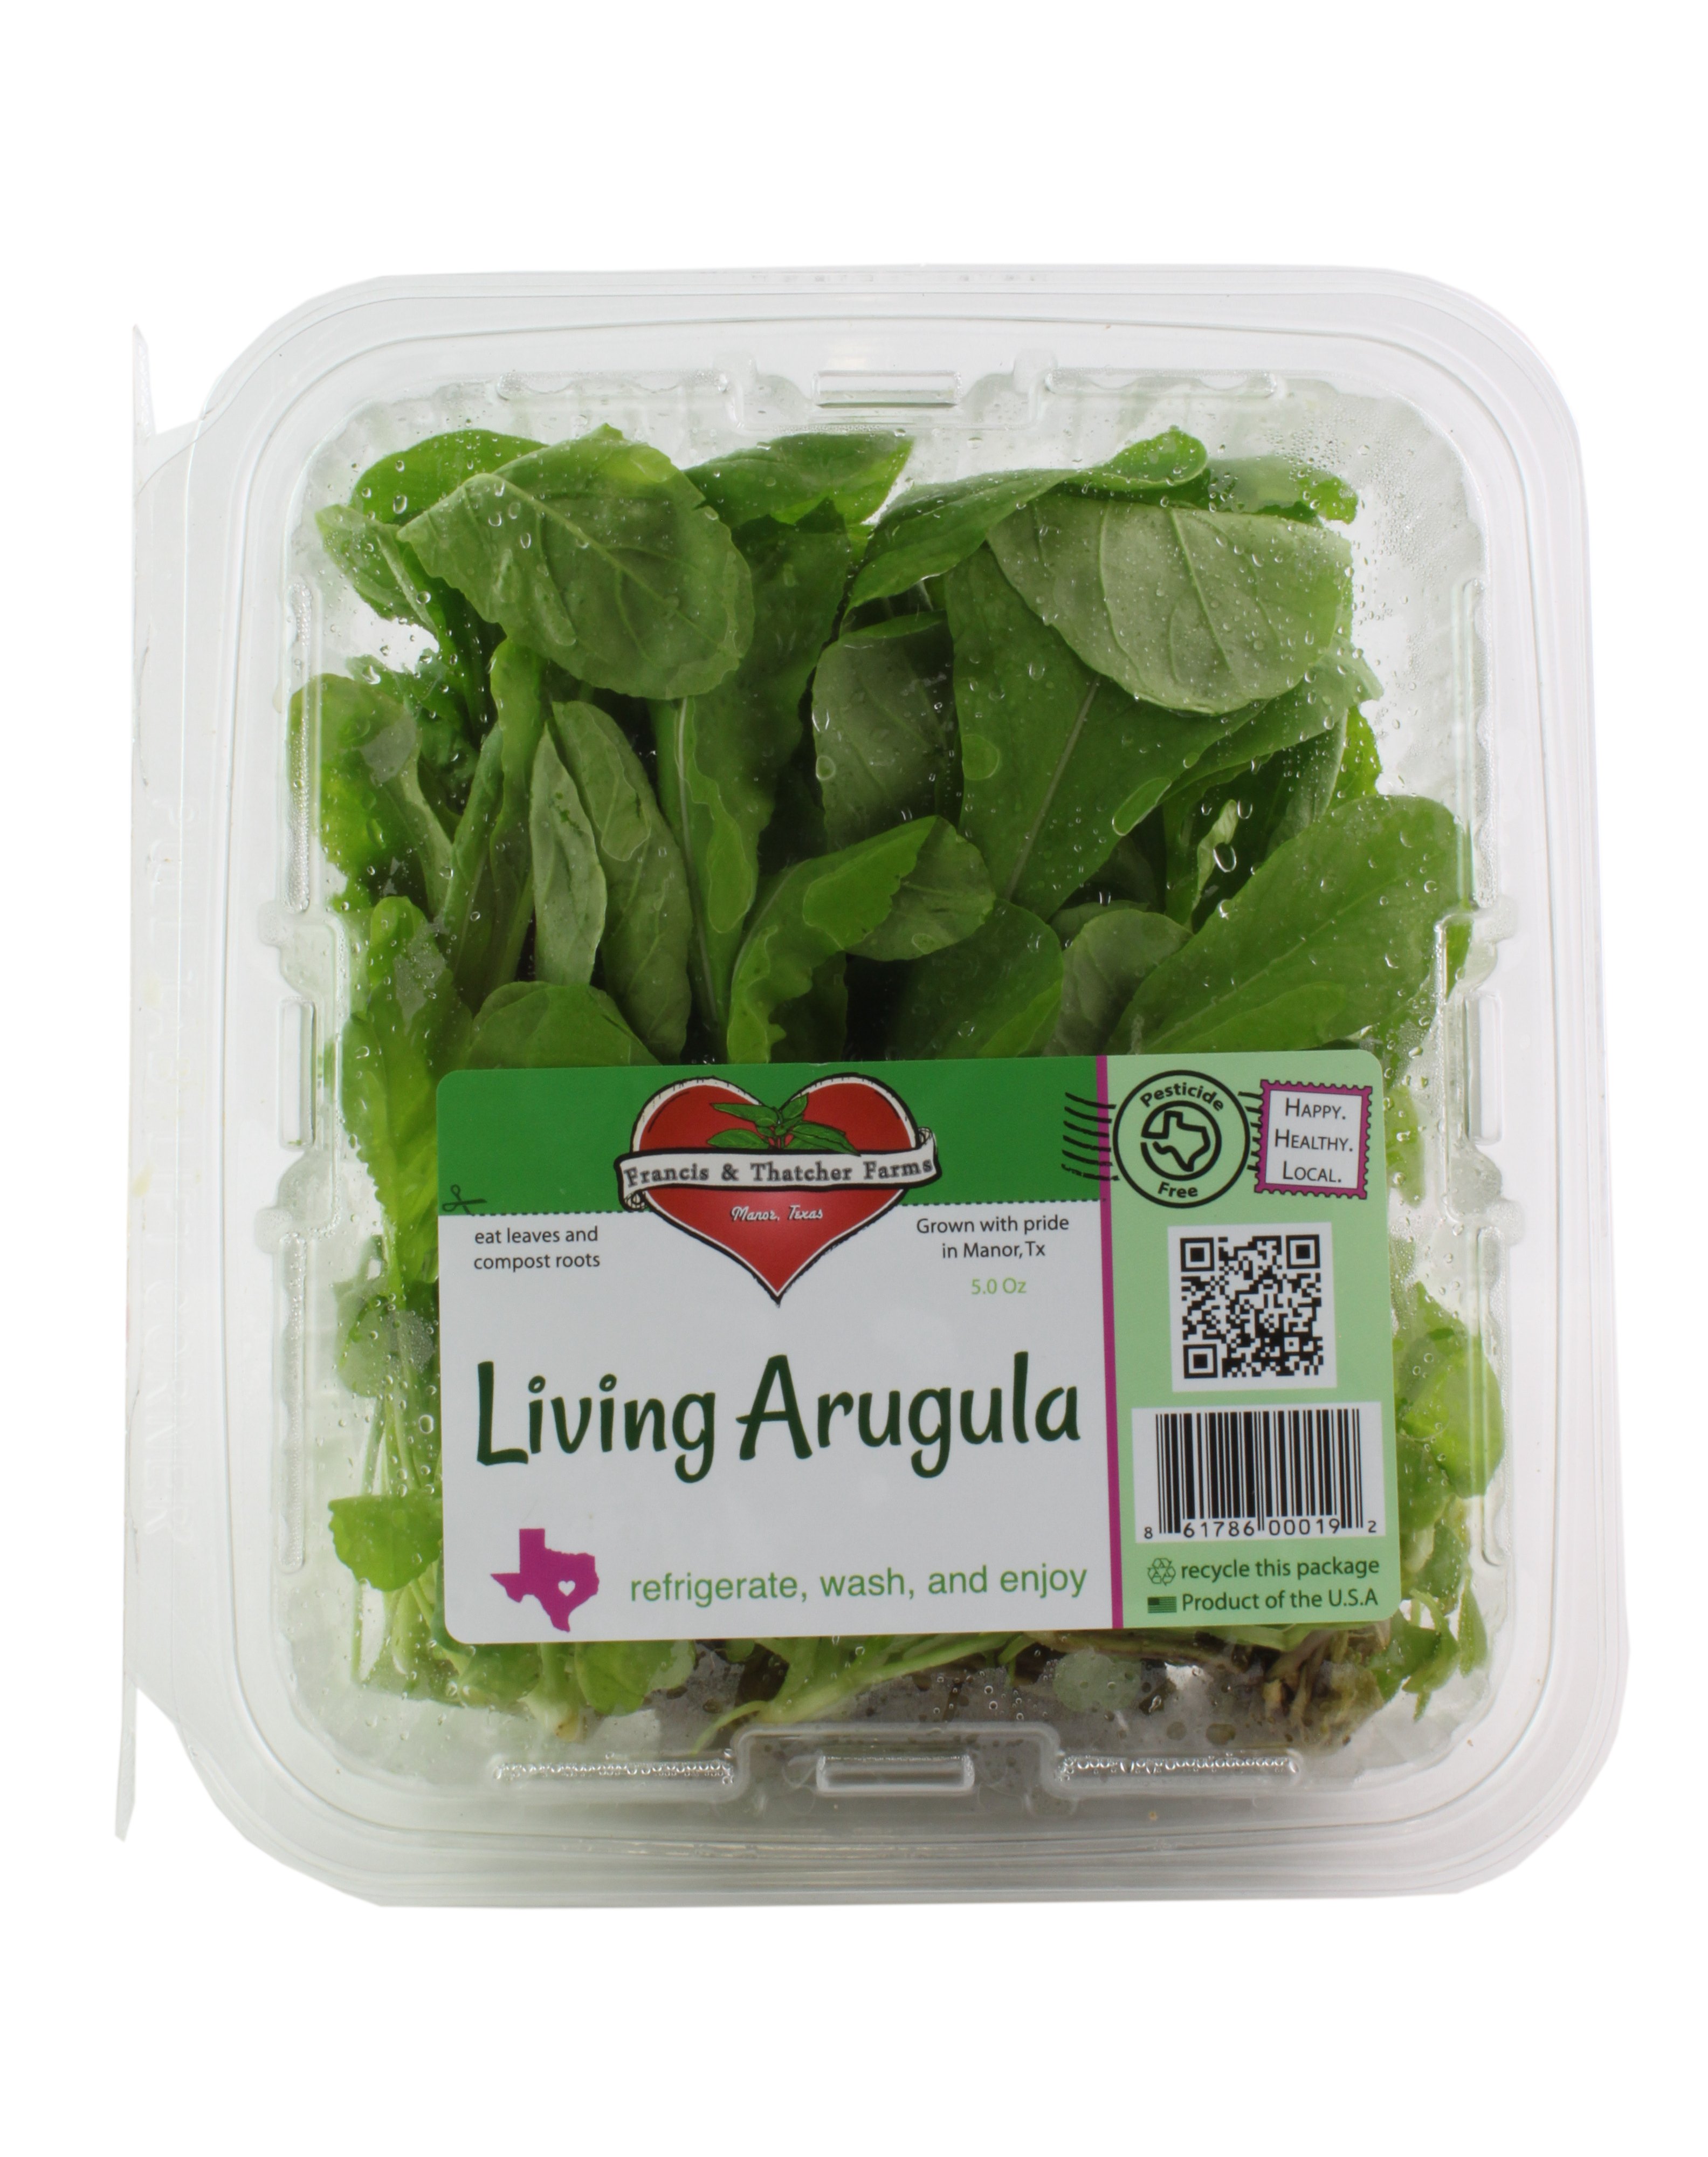 Fresh Texas Hydroponic Arugula Bunch - Shop Lettuce & Leafy Greens at H-E-B